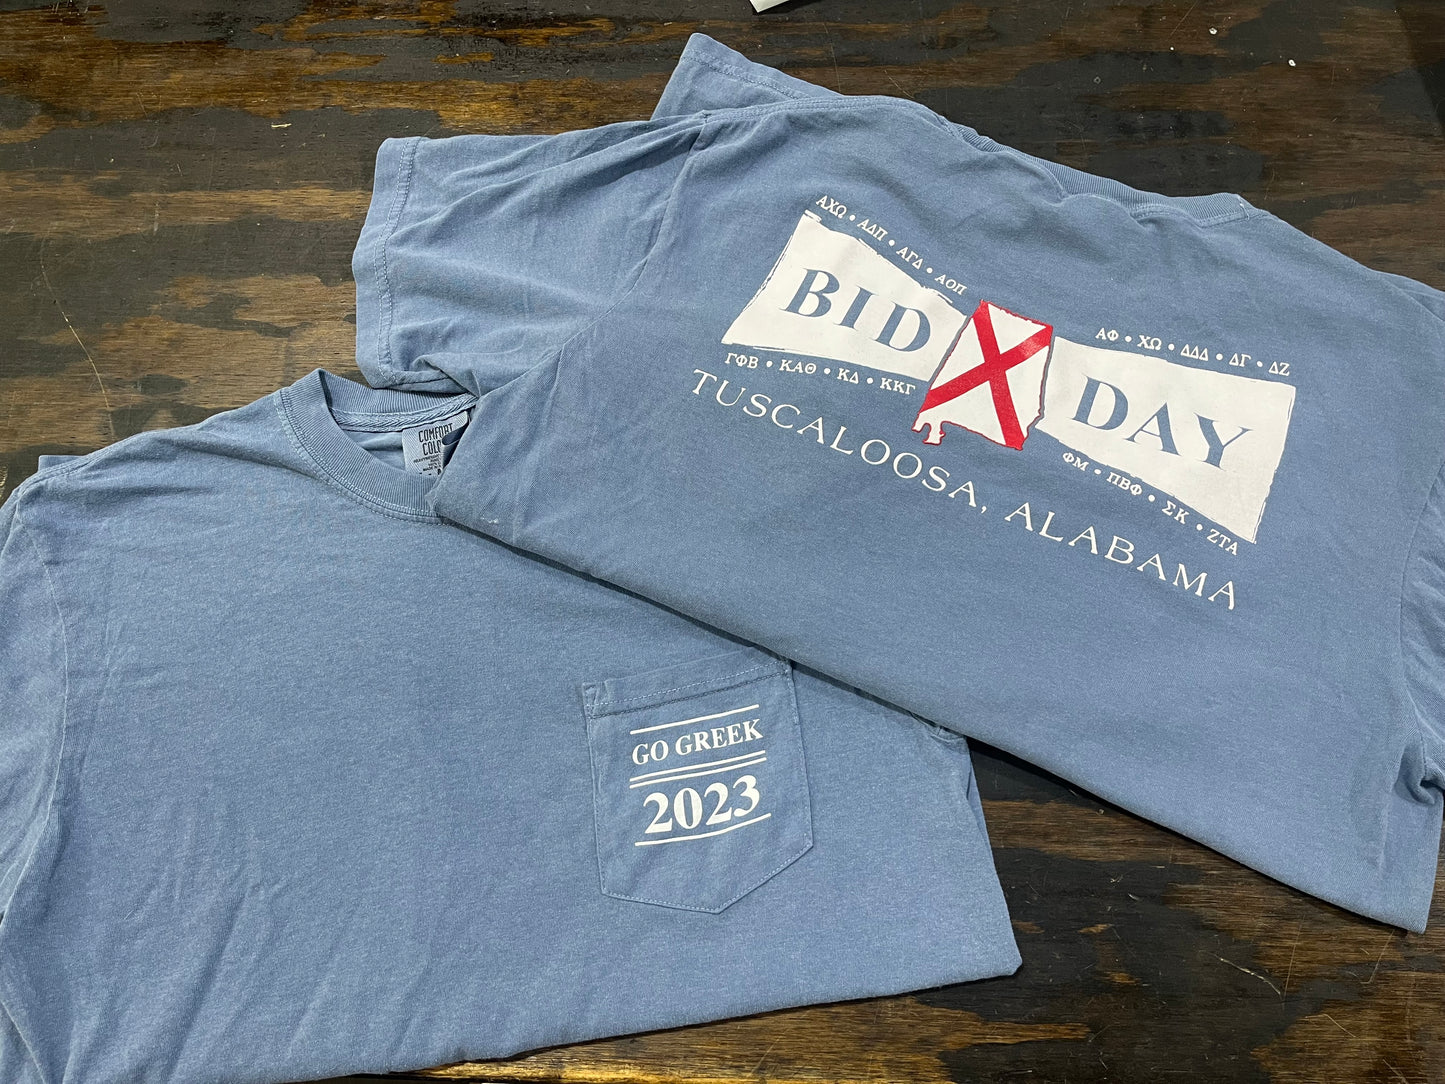 2023 Bid Day T-Shirt